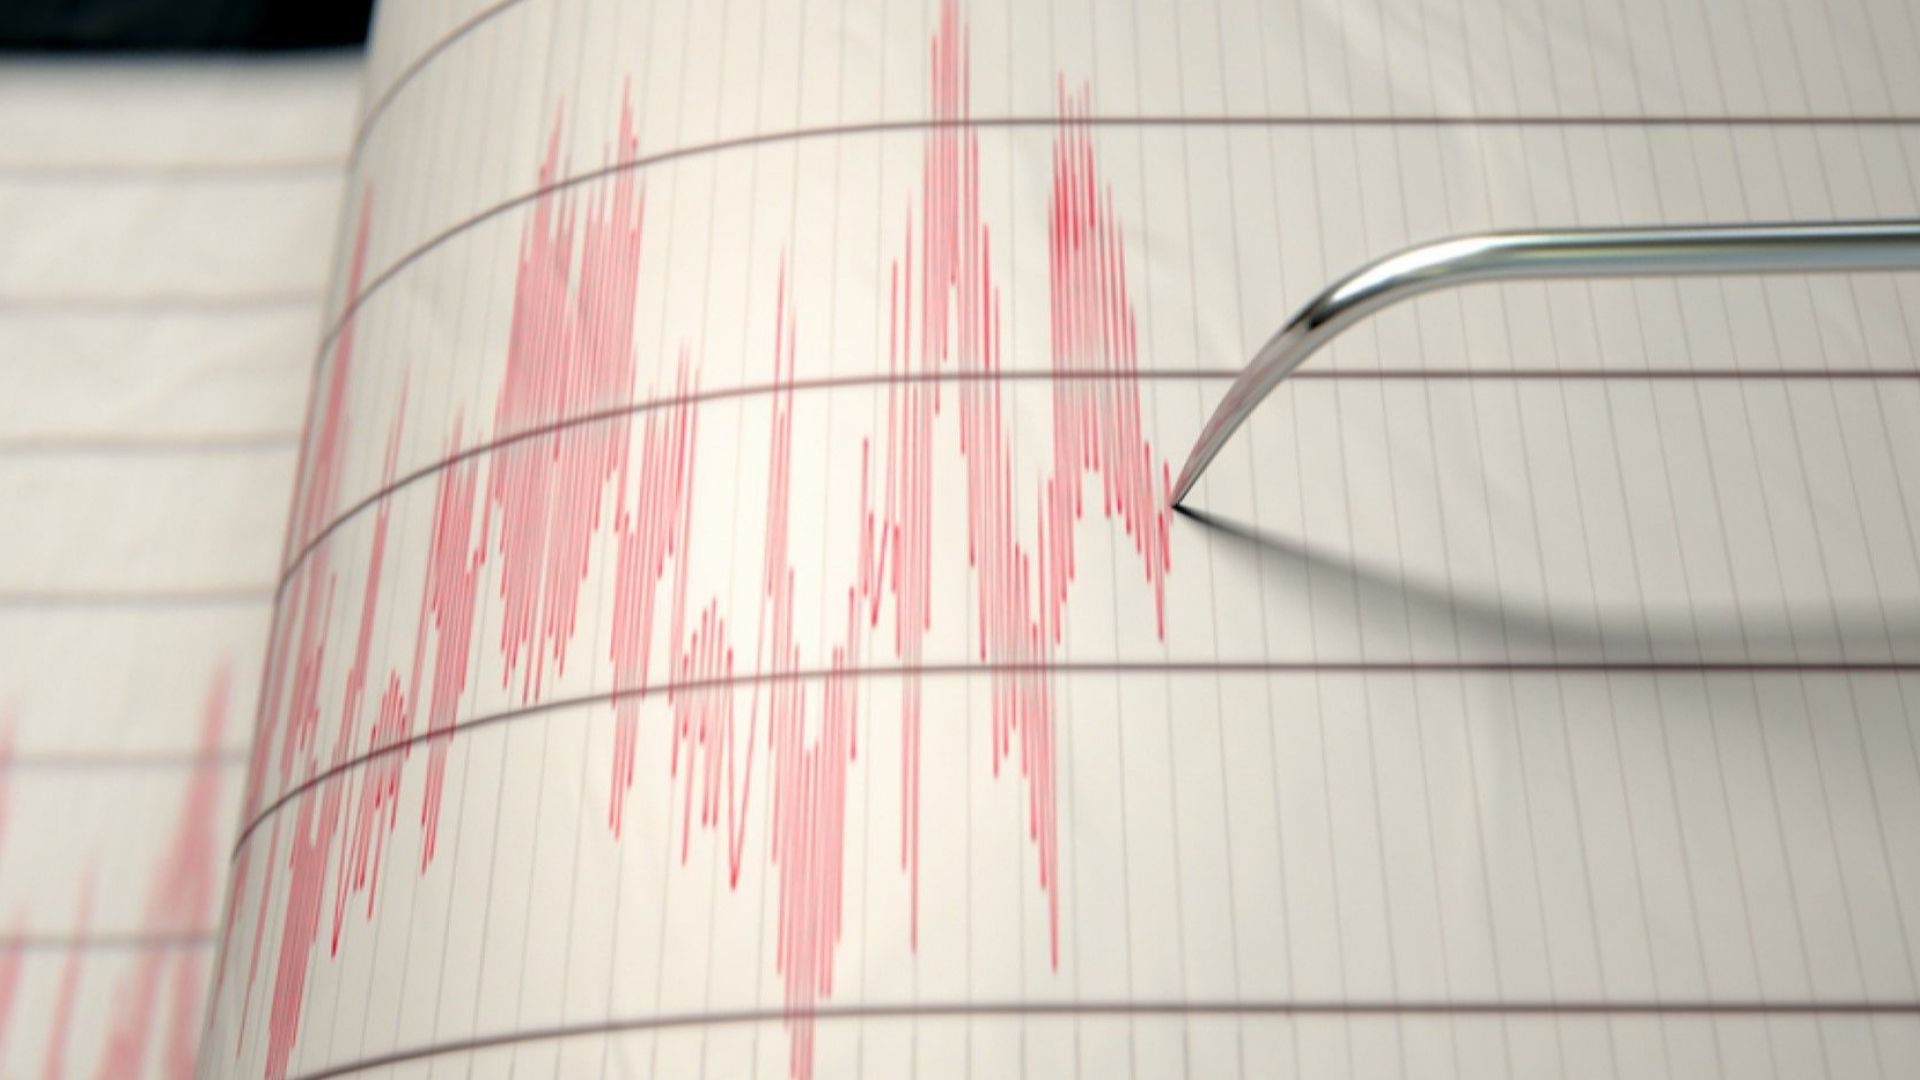 Две земетресения бяха регистрирани в Румъния през изминалата нощ съобщава